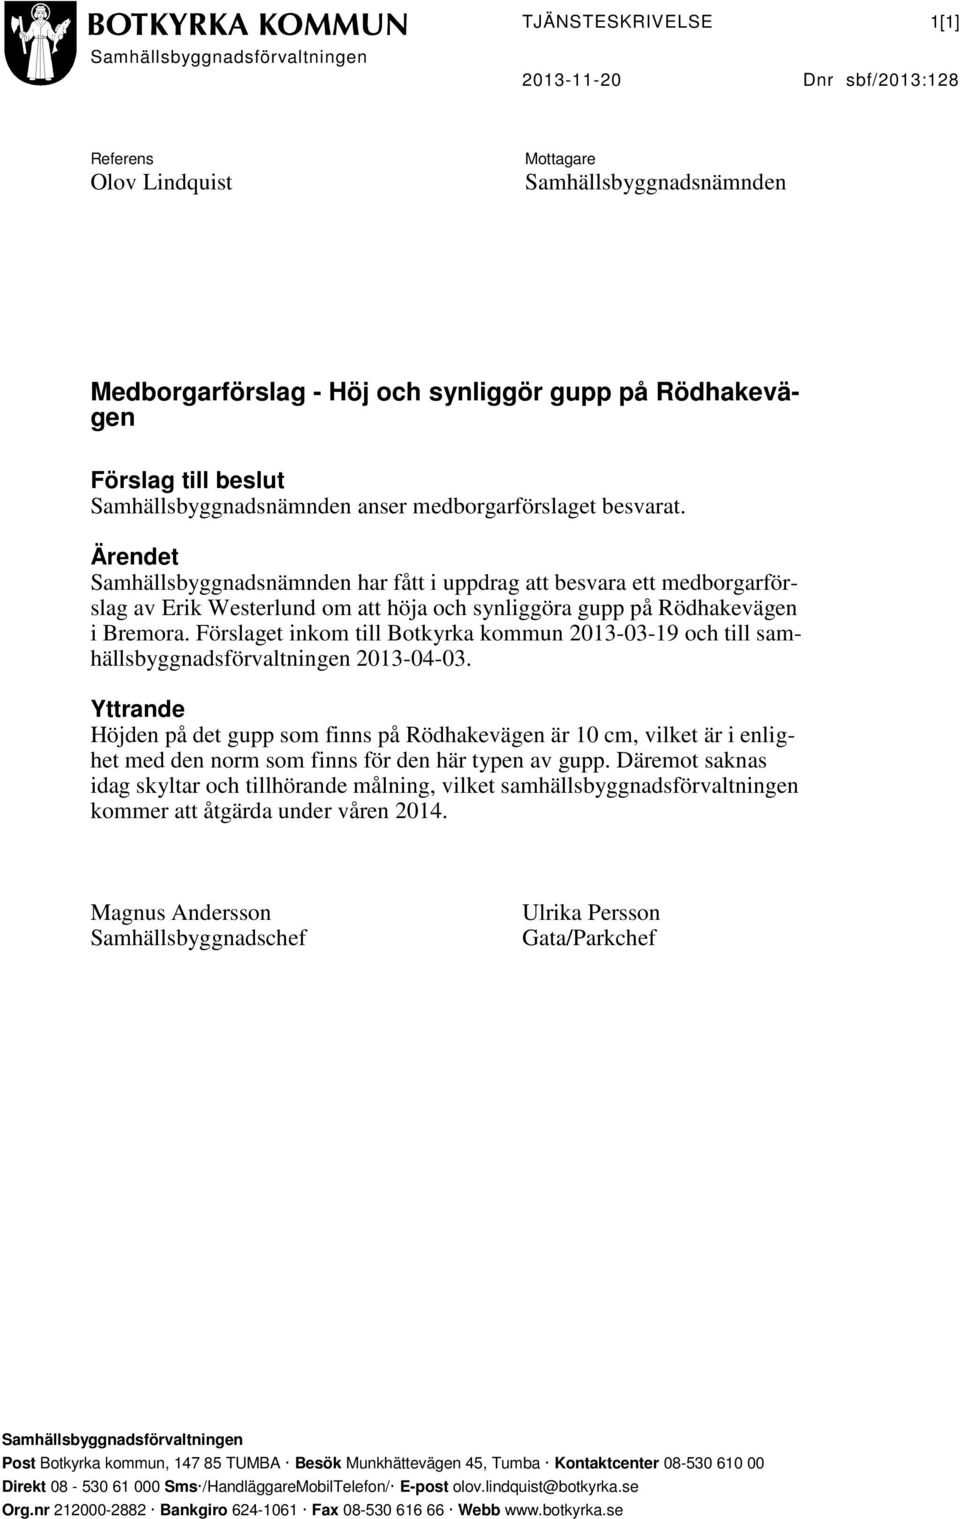 Ärendet Samhällsbyggnadsnämnden har fått i uppdrag att besvara ett medborgarförslag av Erik Westerlund om att höja och synliggöra gupp på Rödhakevägen i Bremora.